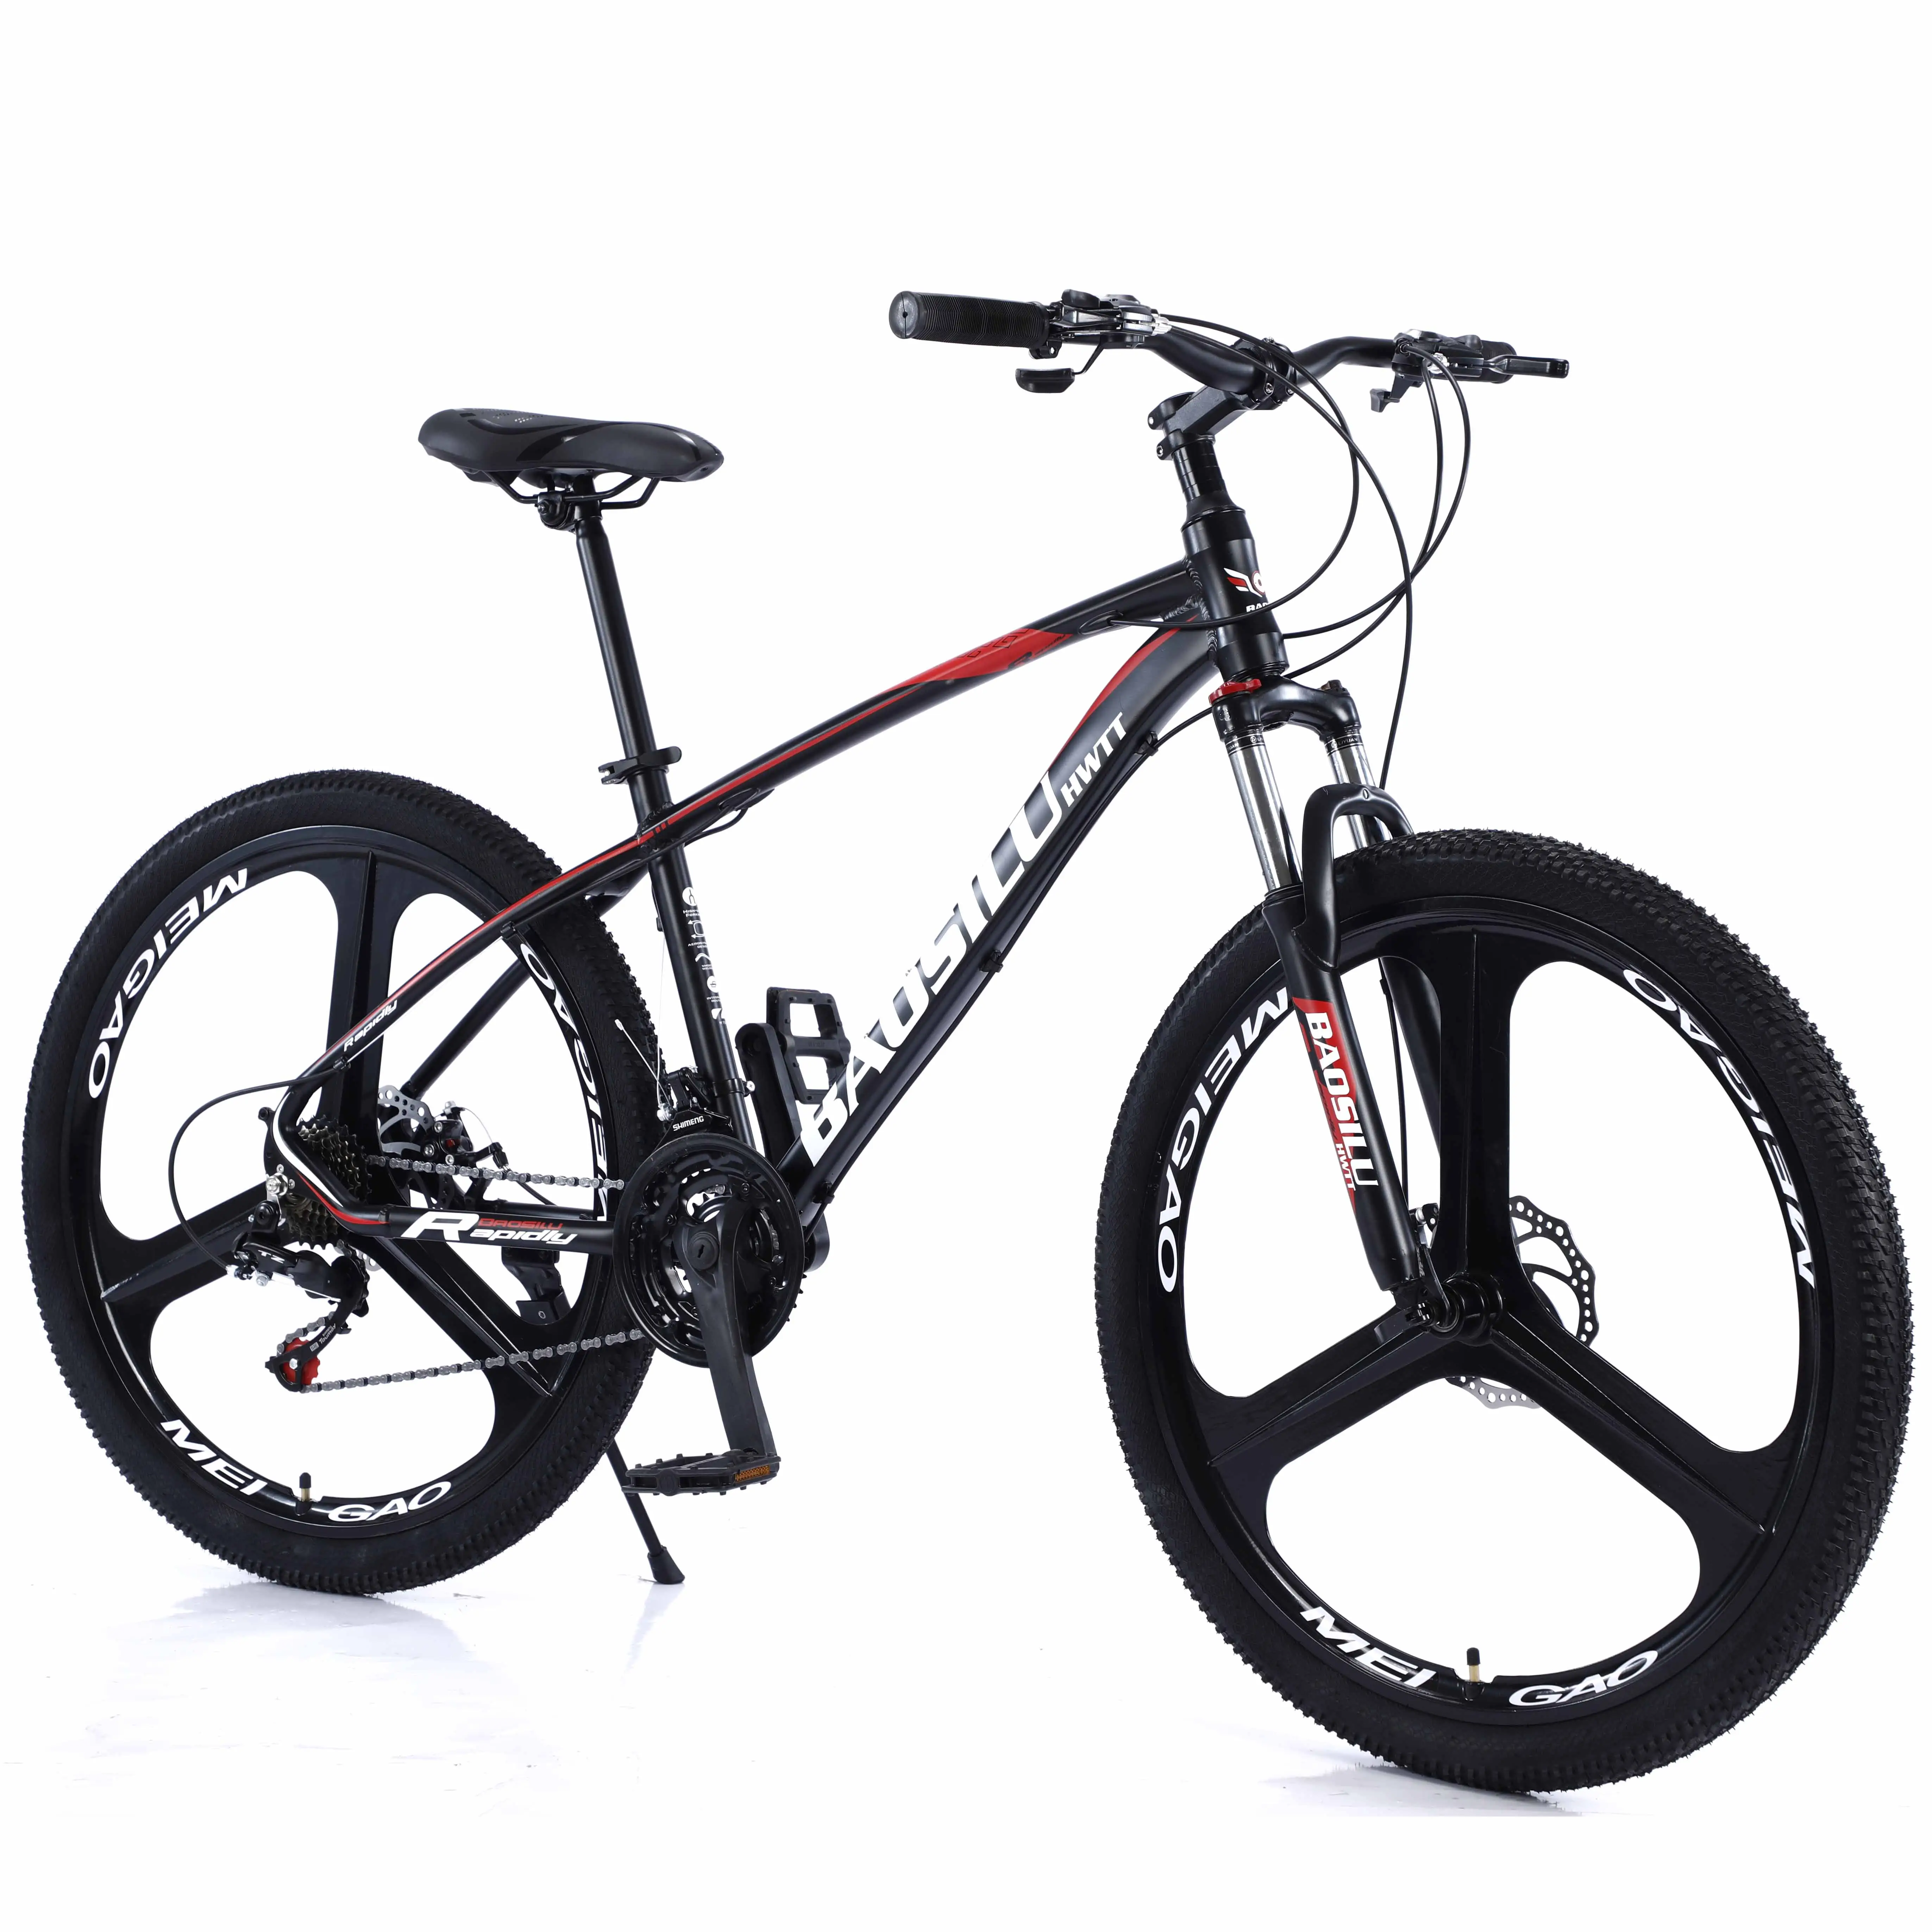 دراجة جبلية للرجال البالغين 29 bicicleta rin بسعر منخفض ، منفذ مصنع أحمر رياضي من الألومنيوم ، دراجة تمرين للبيع